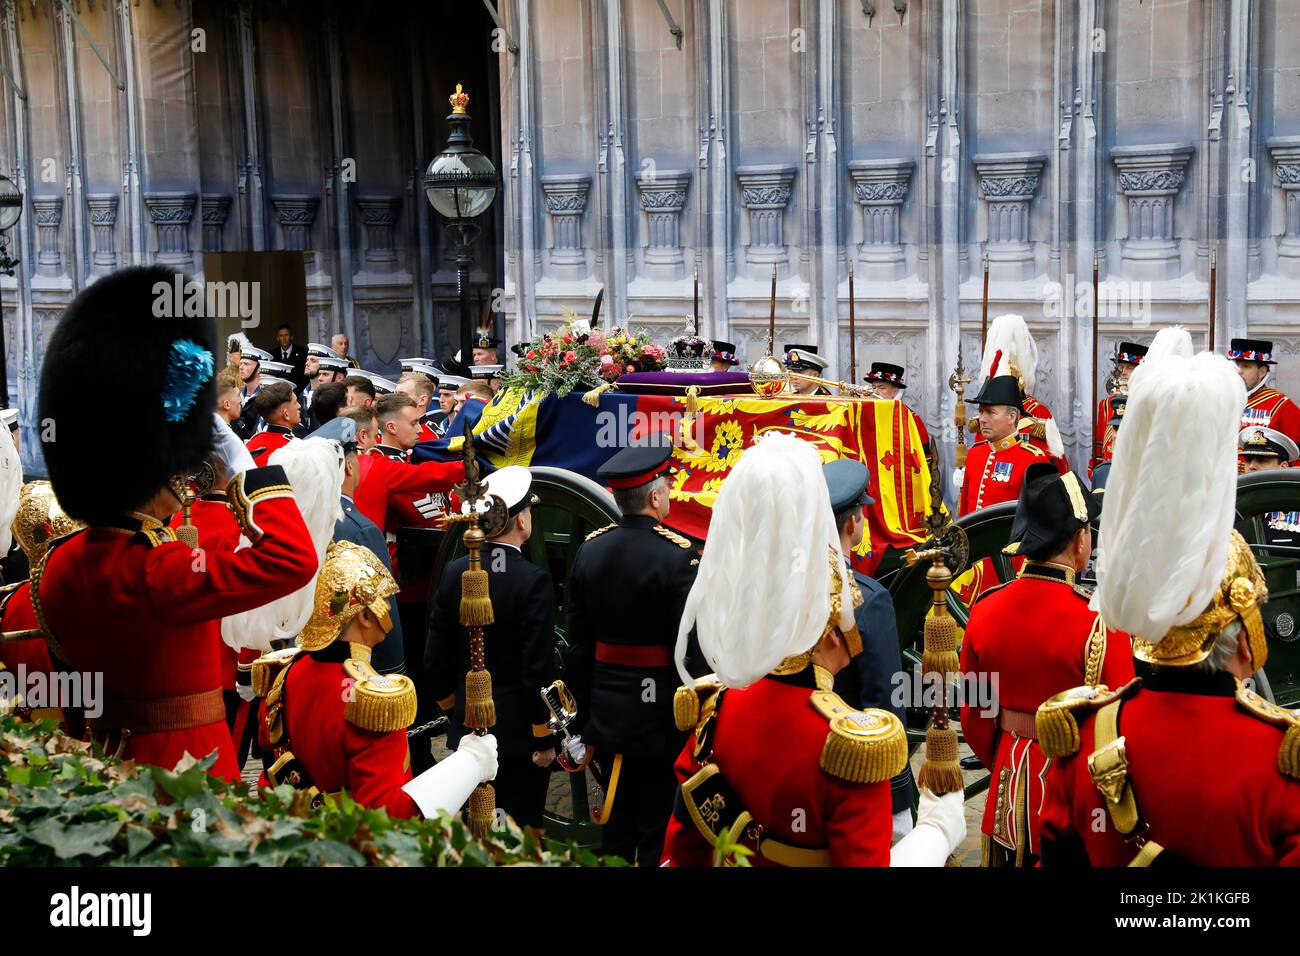 LONDRES, ANGLETERRE - SEPTEMBRE 19 : le cercueil de la reine Élisabeth II avec la couronne d'État impériale reposant sur le dessus, je passe vers l'abbaye de Westminster sur 19 septembre 2022, à Londres, en Angleterre. Elizabeth Alexandra Mary Windsor est née à Bruton Street, Mayfair, Londres, le 21 avril 1926. Elle épousa le prince Philip en 1947 et monta le trône du Royaume-Uni et du Commonwealth le 6 février 1952 après la mort de son père, le roi George VI La reine Elizabeth II est décédée au château Balmoral en Écosse sur 8 septembre 2022, et son fils aîné, le roi Charles III (Photo de Tristan Fewin Banque D'Images